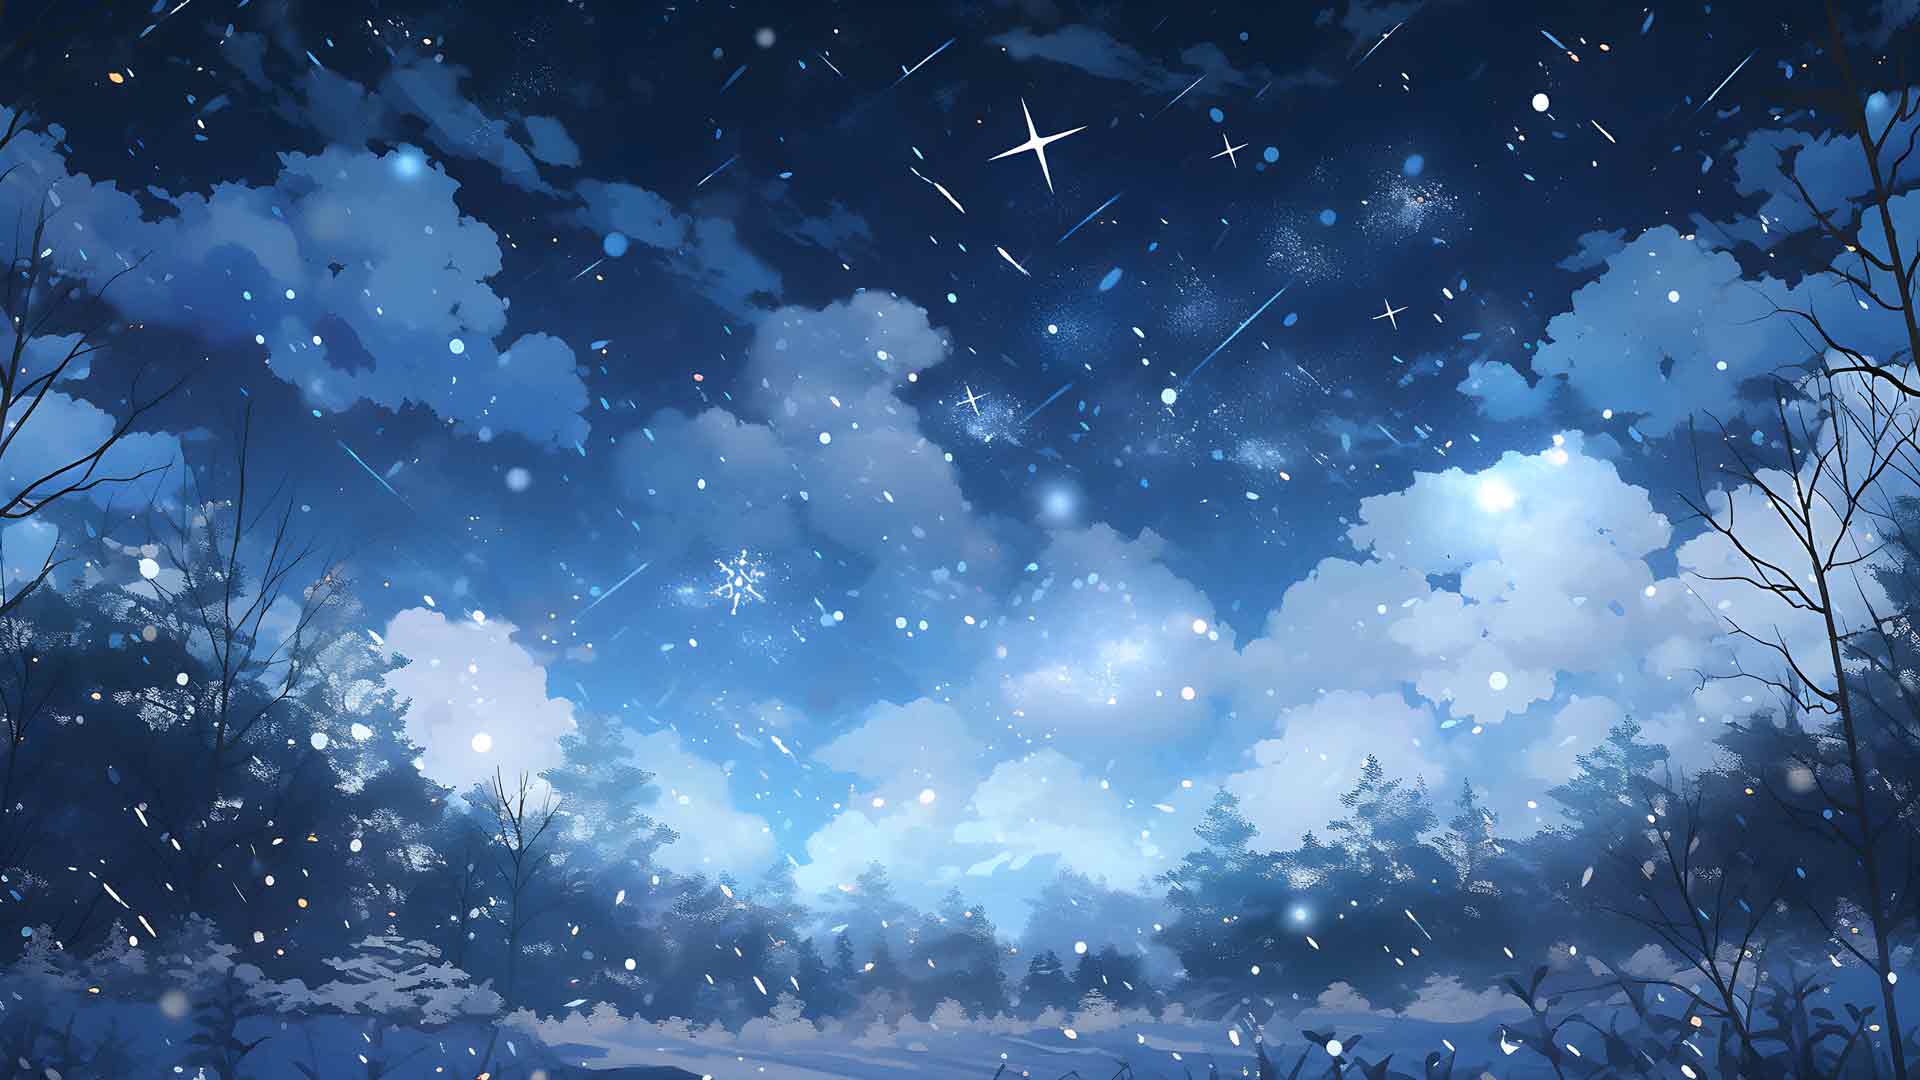 夜空与雪花桌面壁纸